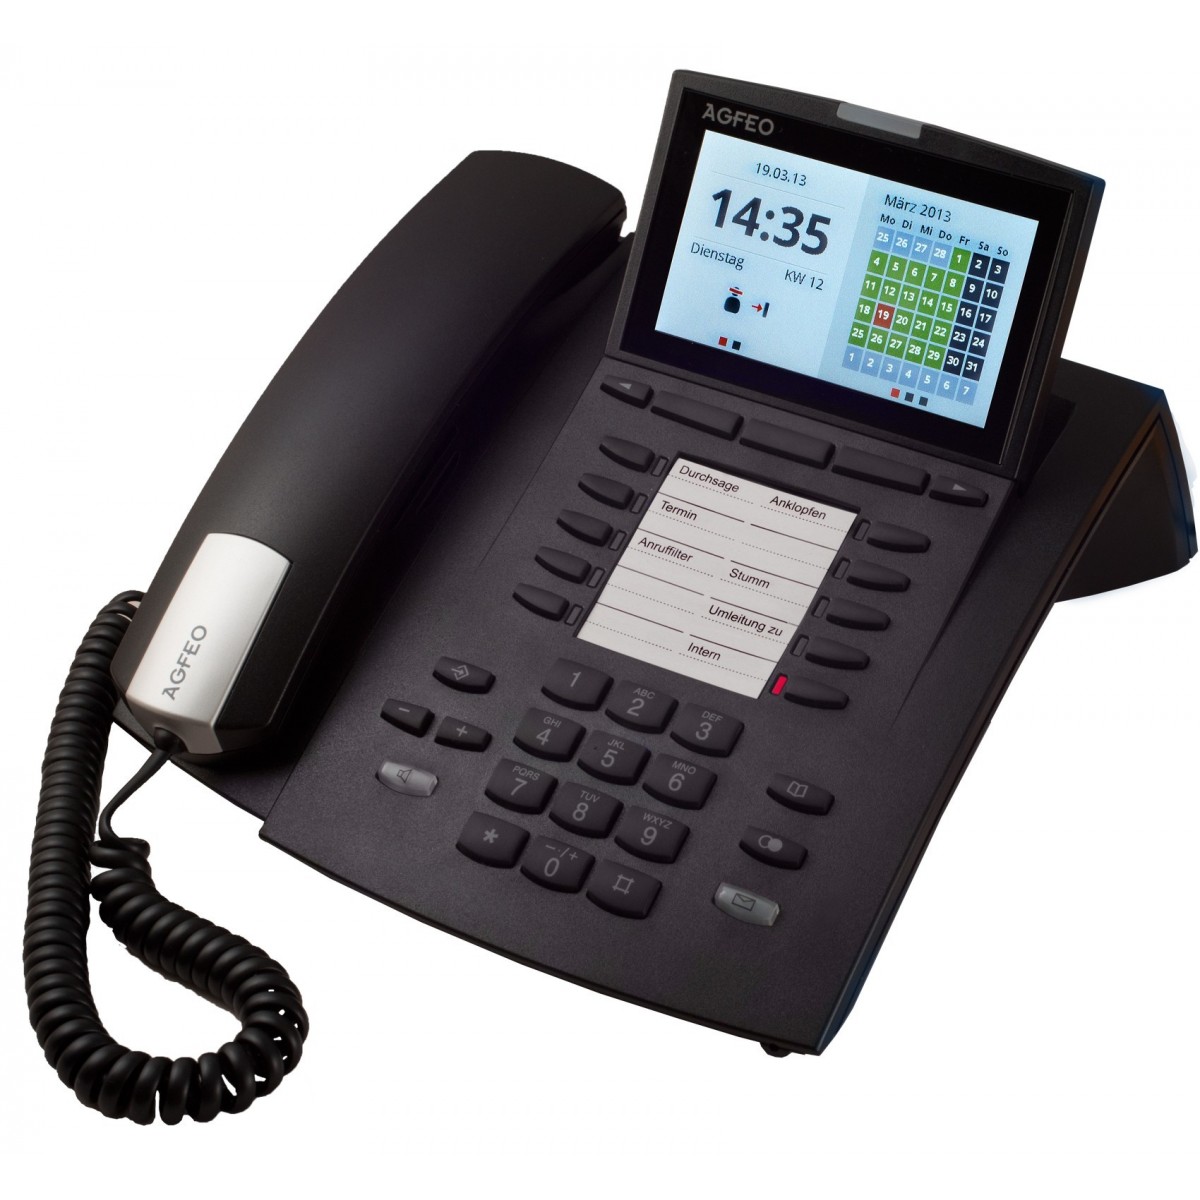 AGFEO ST 45 - Analoges Telefon - 1000 Eintragungen - Anrufer-Identifikation - Schwarz